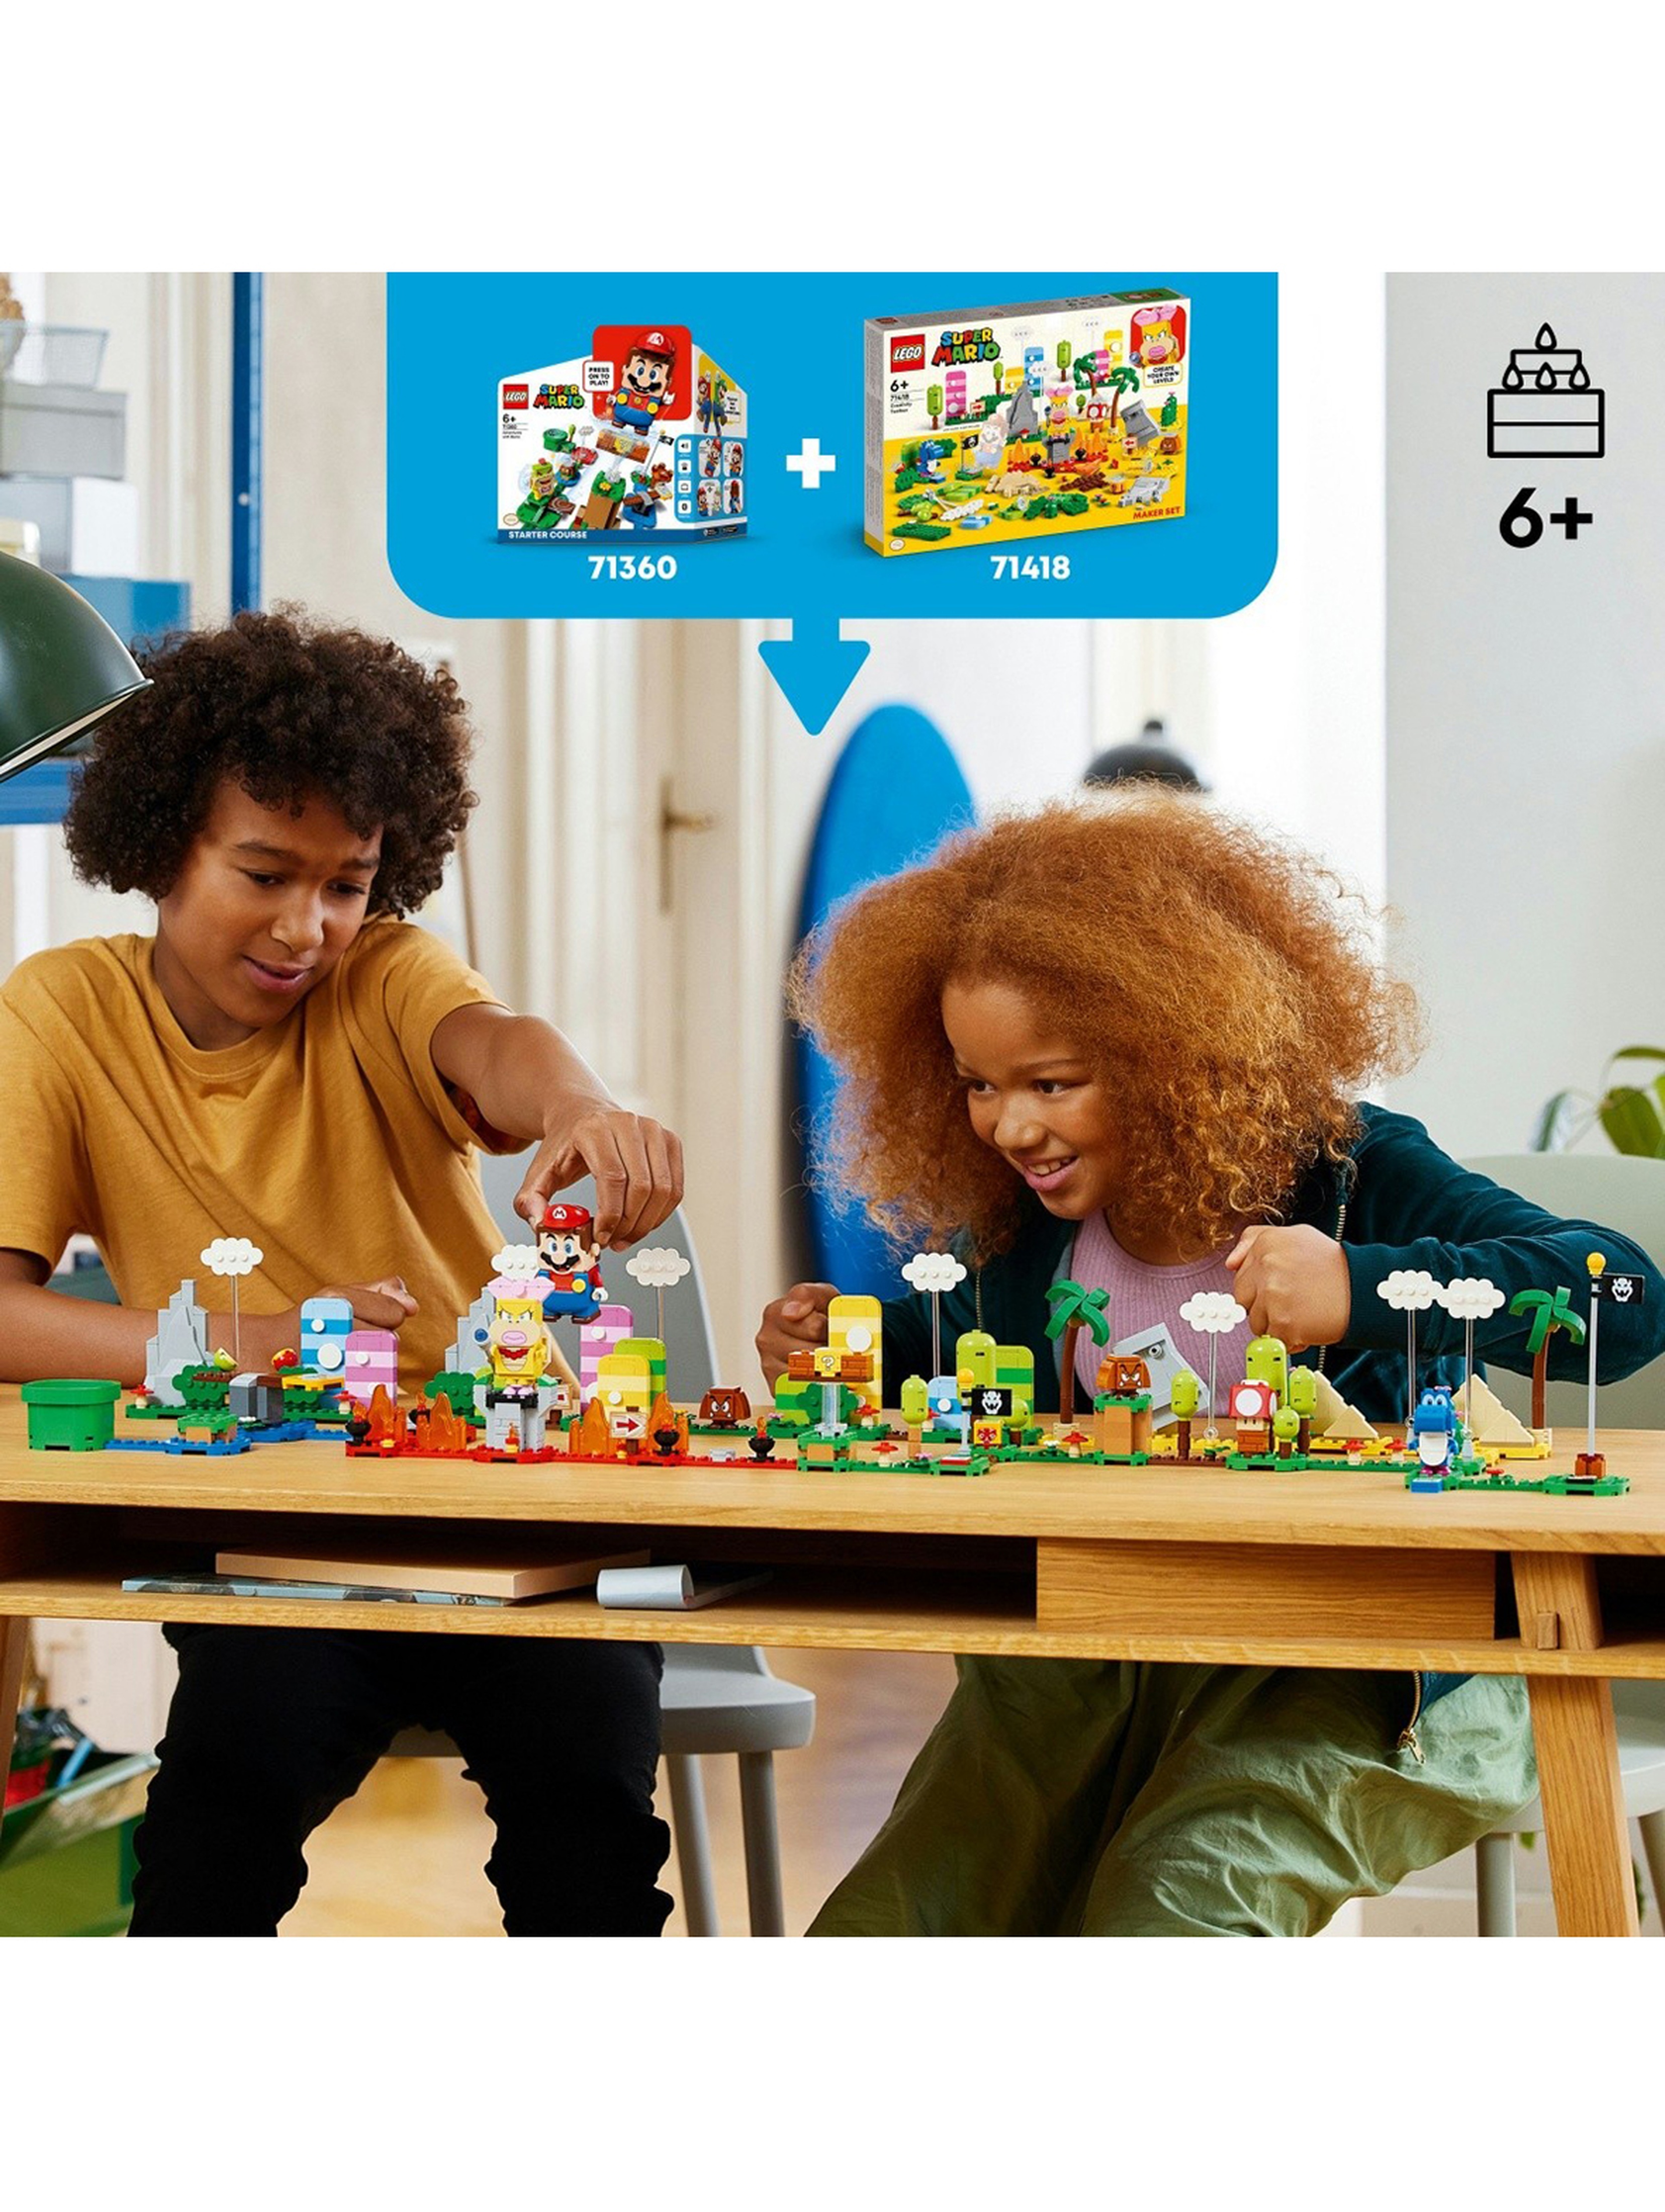 Klocki LEGO Super Mario 71418 Kreatywna skrzyneczka - zestaw twórcy - 588 elementów, wiek 6 +